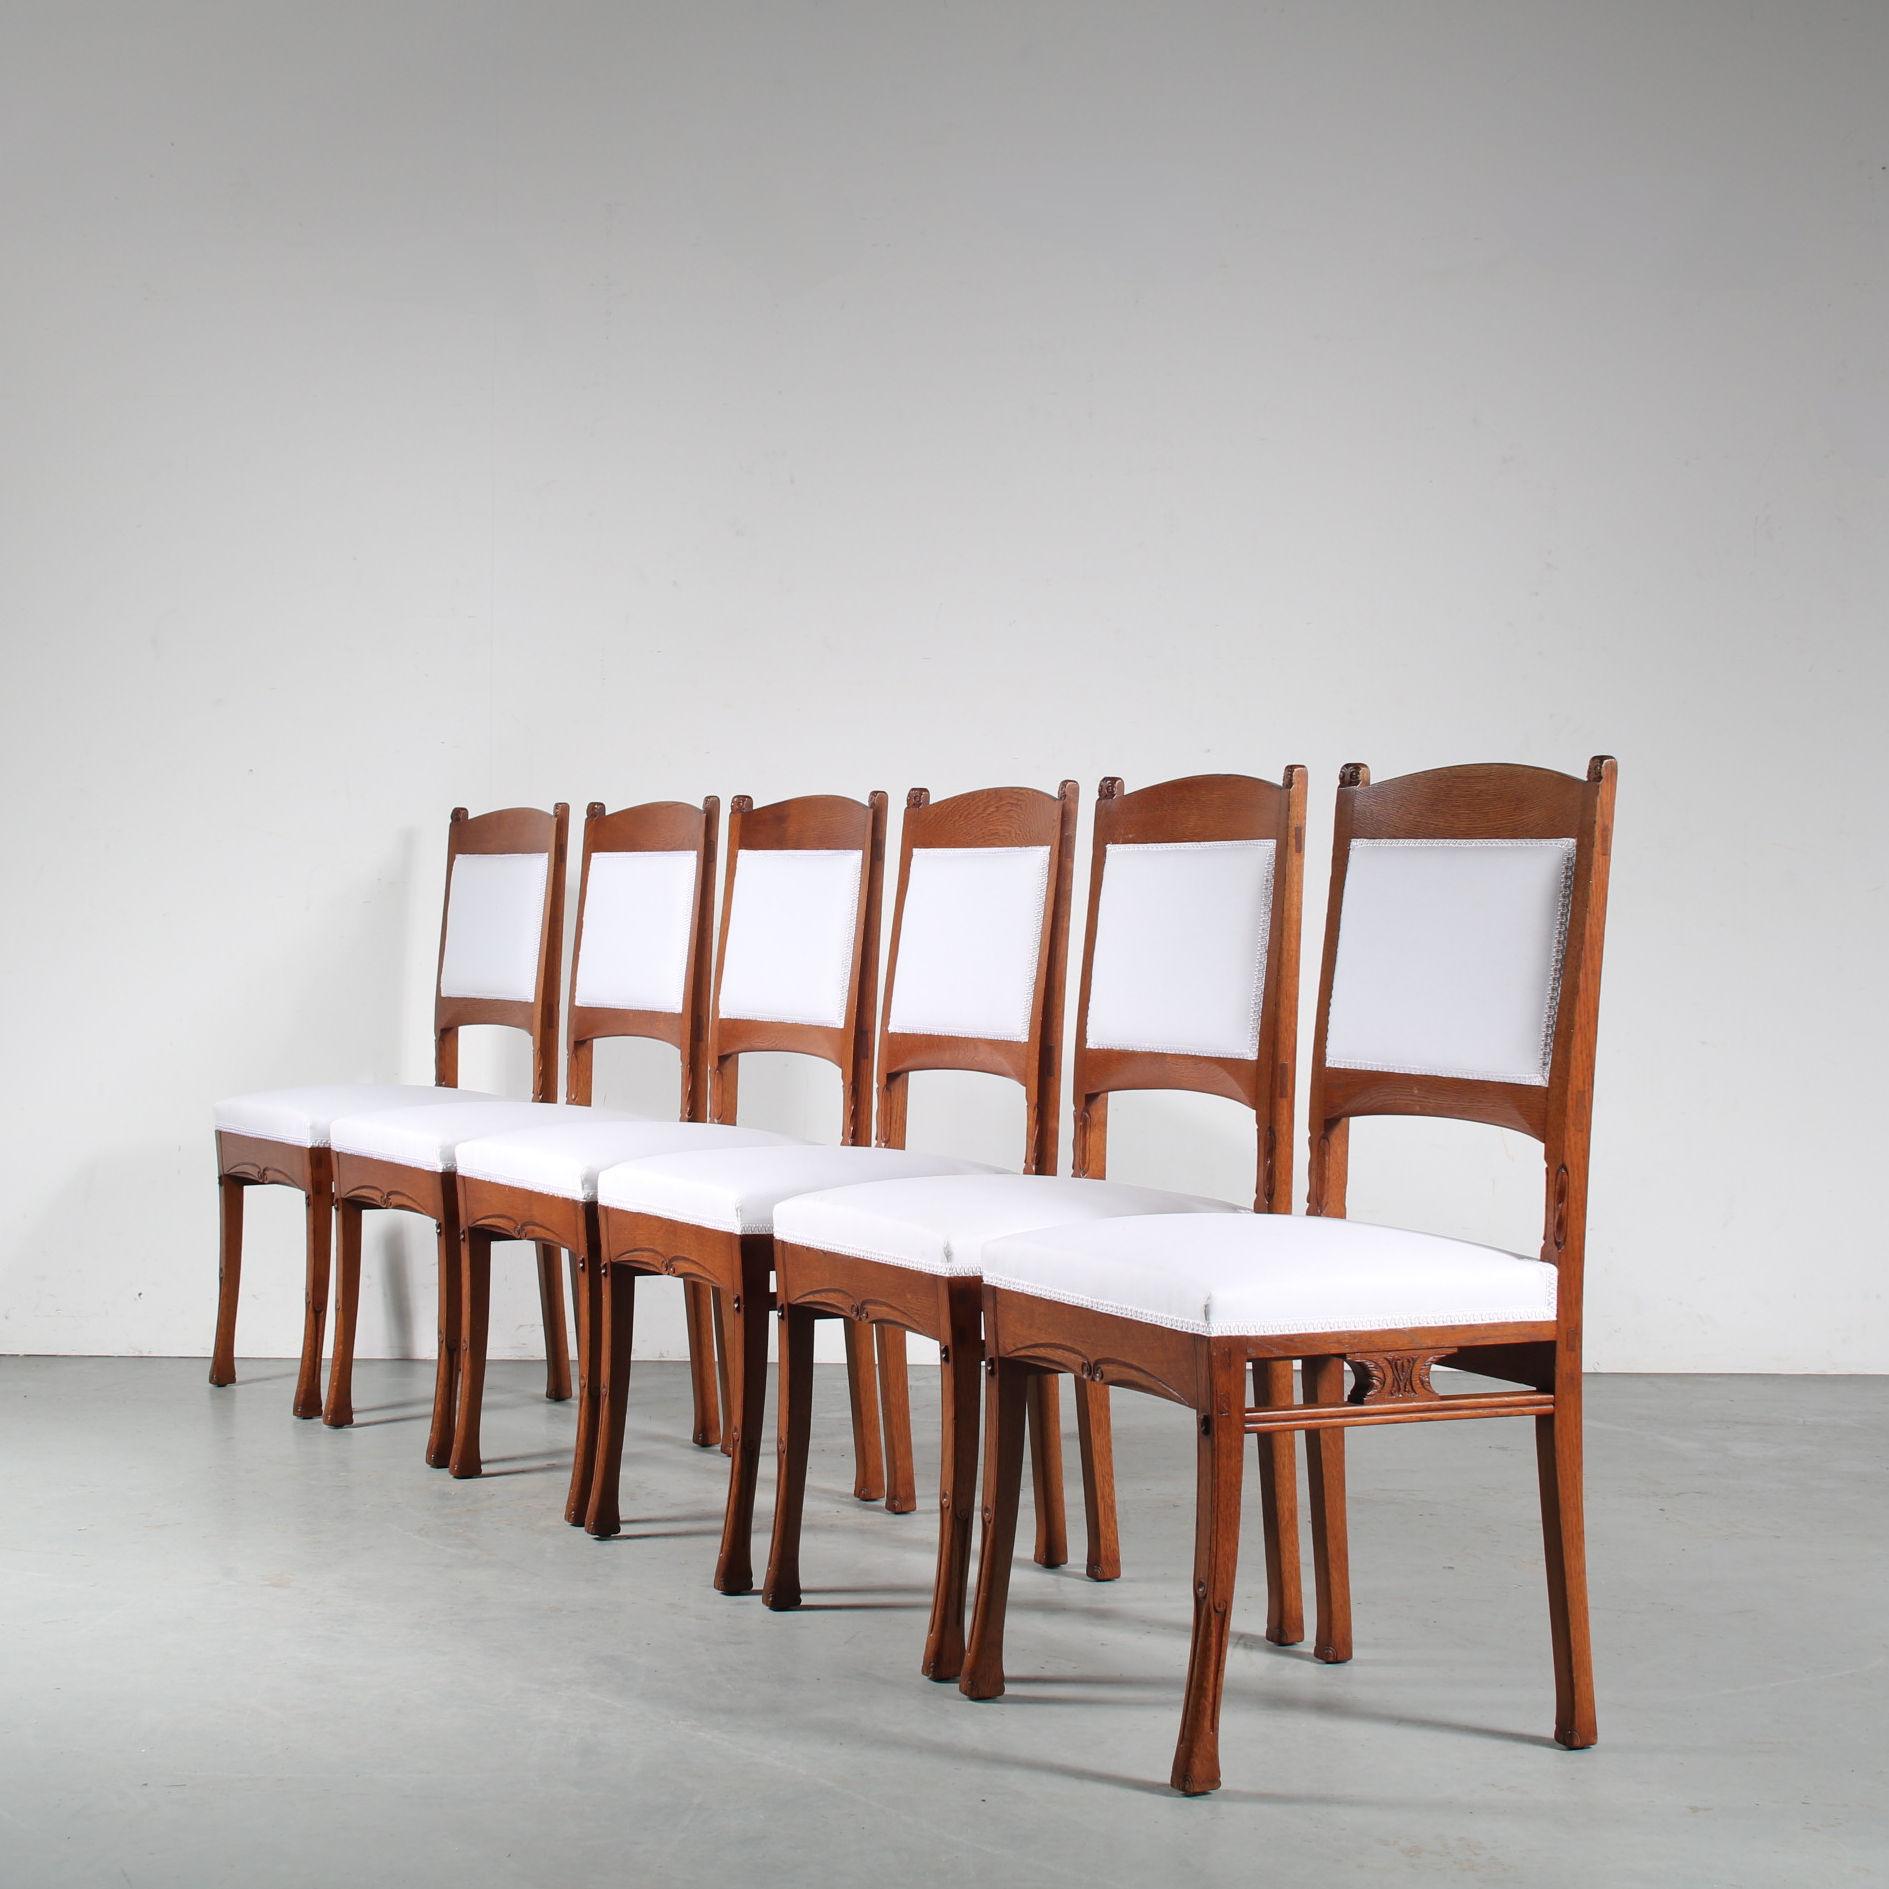 Ein schönes Set von Esszimmerstühlen, entworfen von Gerrit Willem Dijsselhof, hergestellt von Van Wisselingh in Amsterdam, Niederlande, um 1900.

Aus hochwertigem Eichenholz in einem schönen warmen Braunton gefertigt, bestechen diese Stücke durch